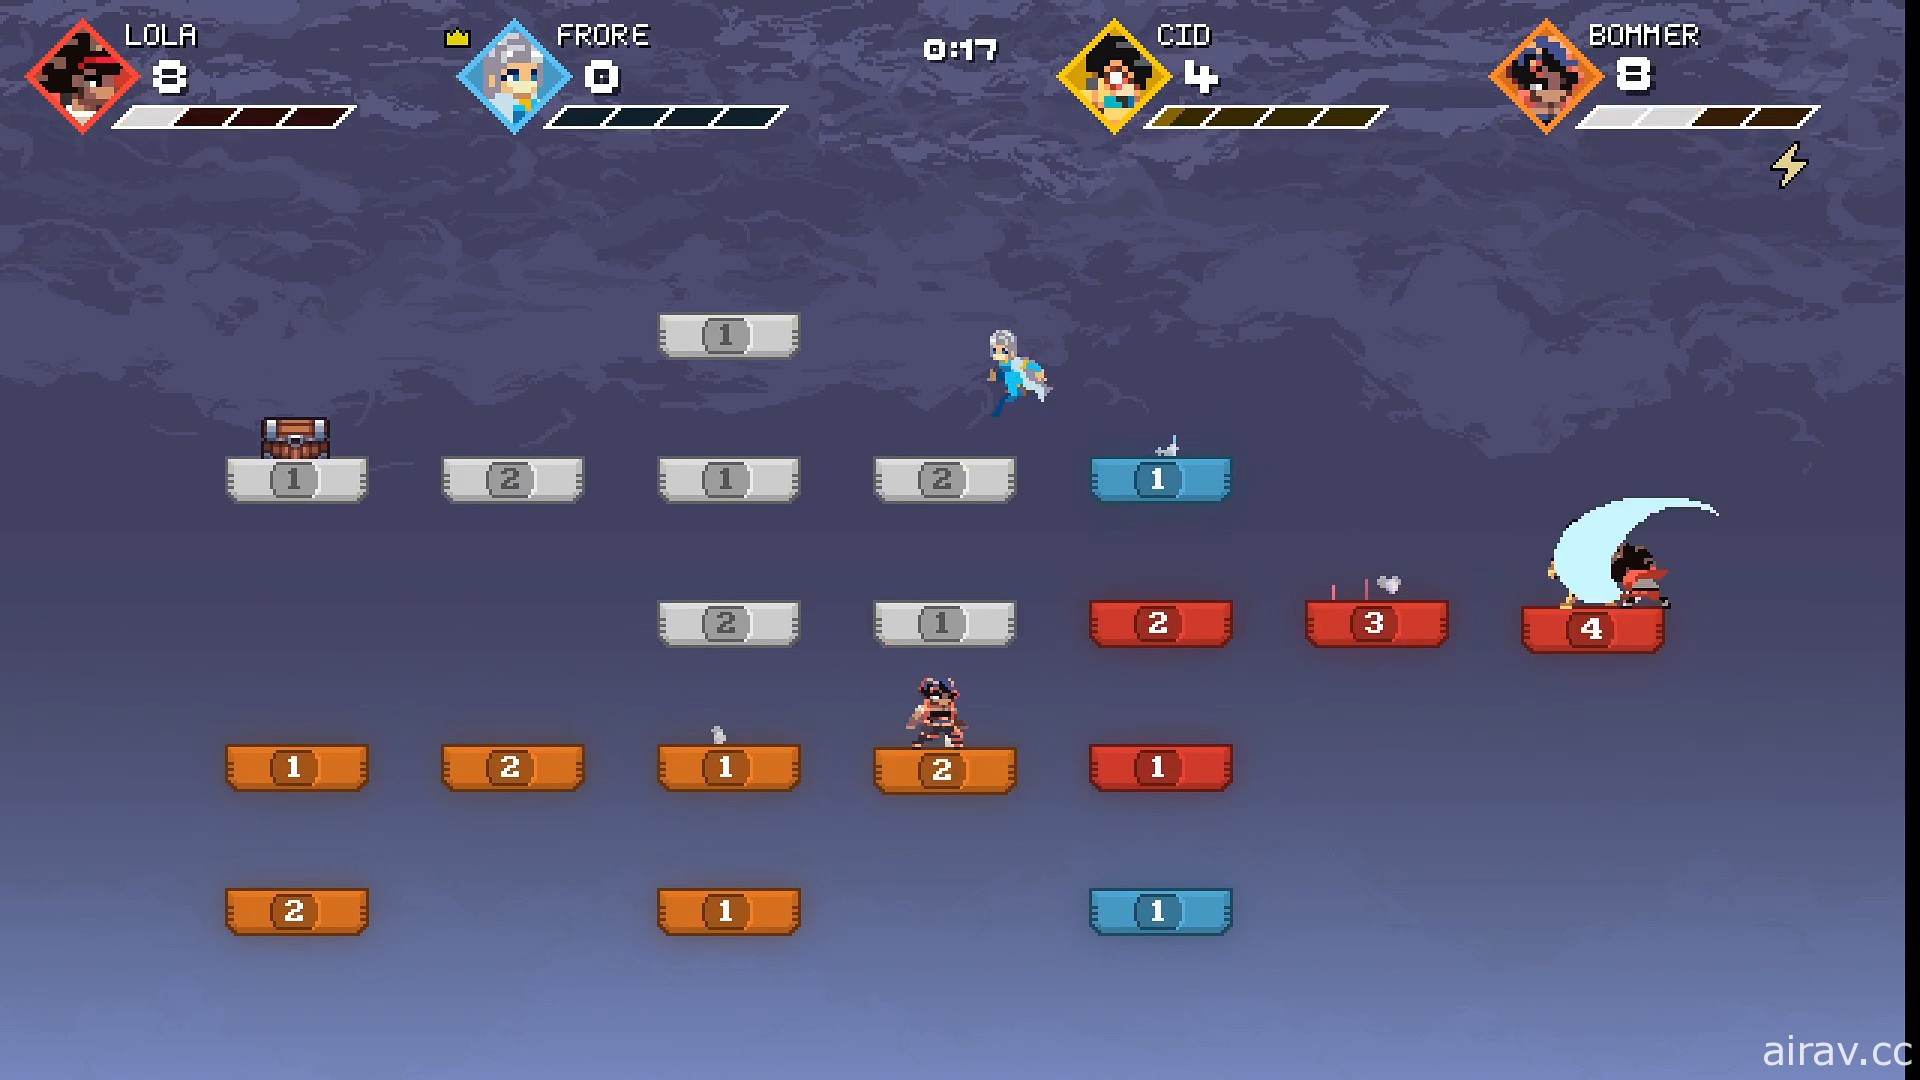 快节奏竞技游戏《跳跃啦 Jumpala》释出试玩版 于各平台来回跳跃累积分数